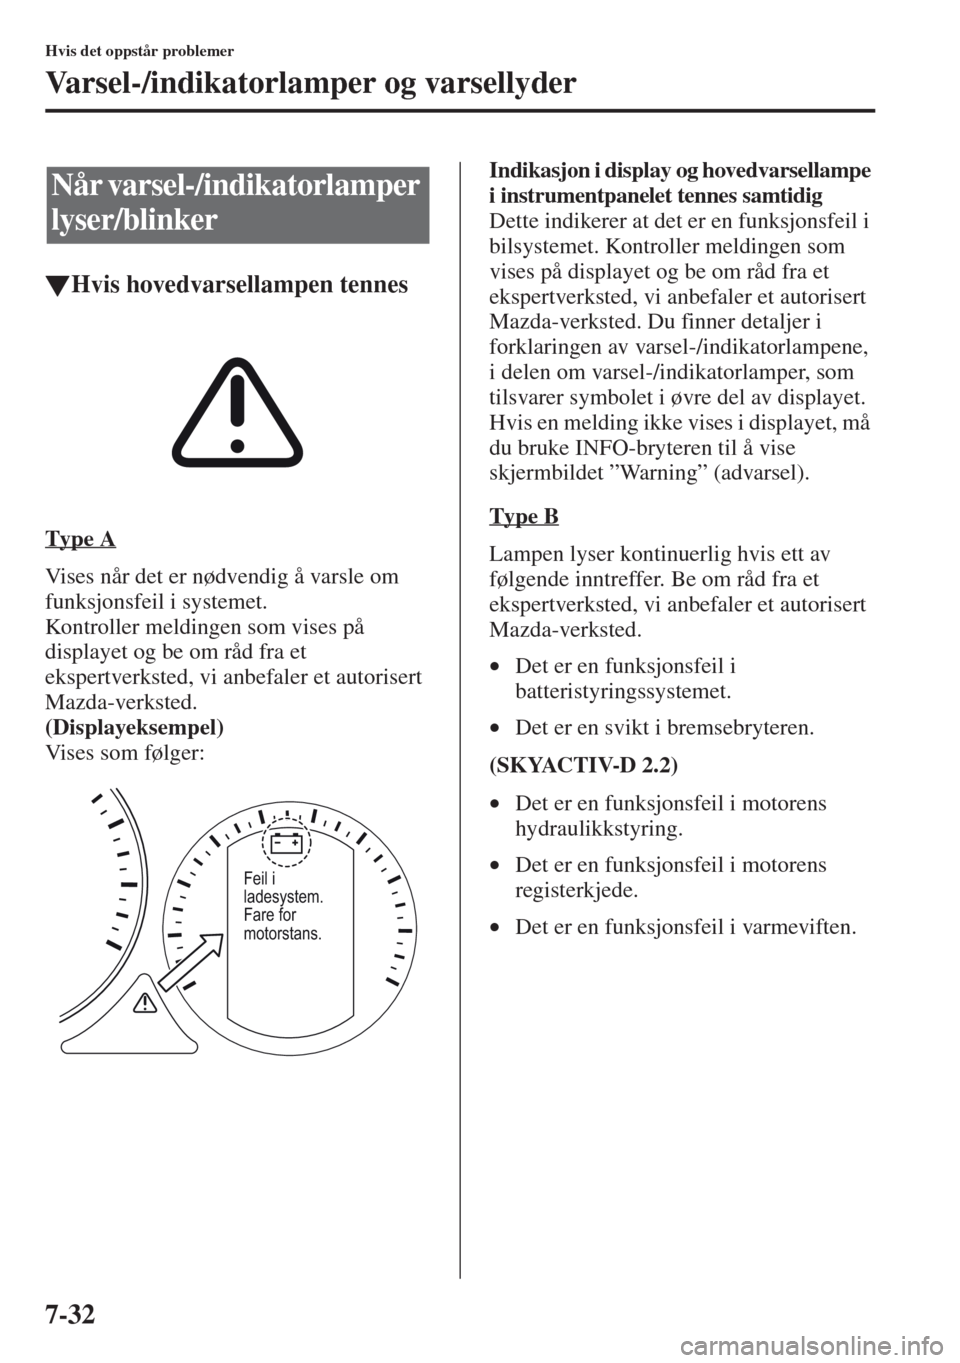 MAZDA MODEL CX-5 2013  Brukerhåndbok (in Norwegian) 7-32
Hvis det oppstår problemer
Varsel-/indikatorlamper og varsellyder
tHvis hovedvarsellampen tennes
Type A
Vises når det er nødvendig å varsle om 
funksjonsfeil i systemet.
Kontroller meldingen 